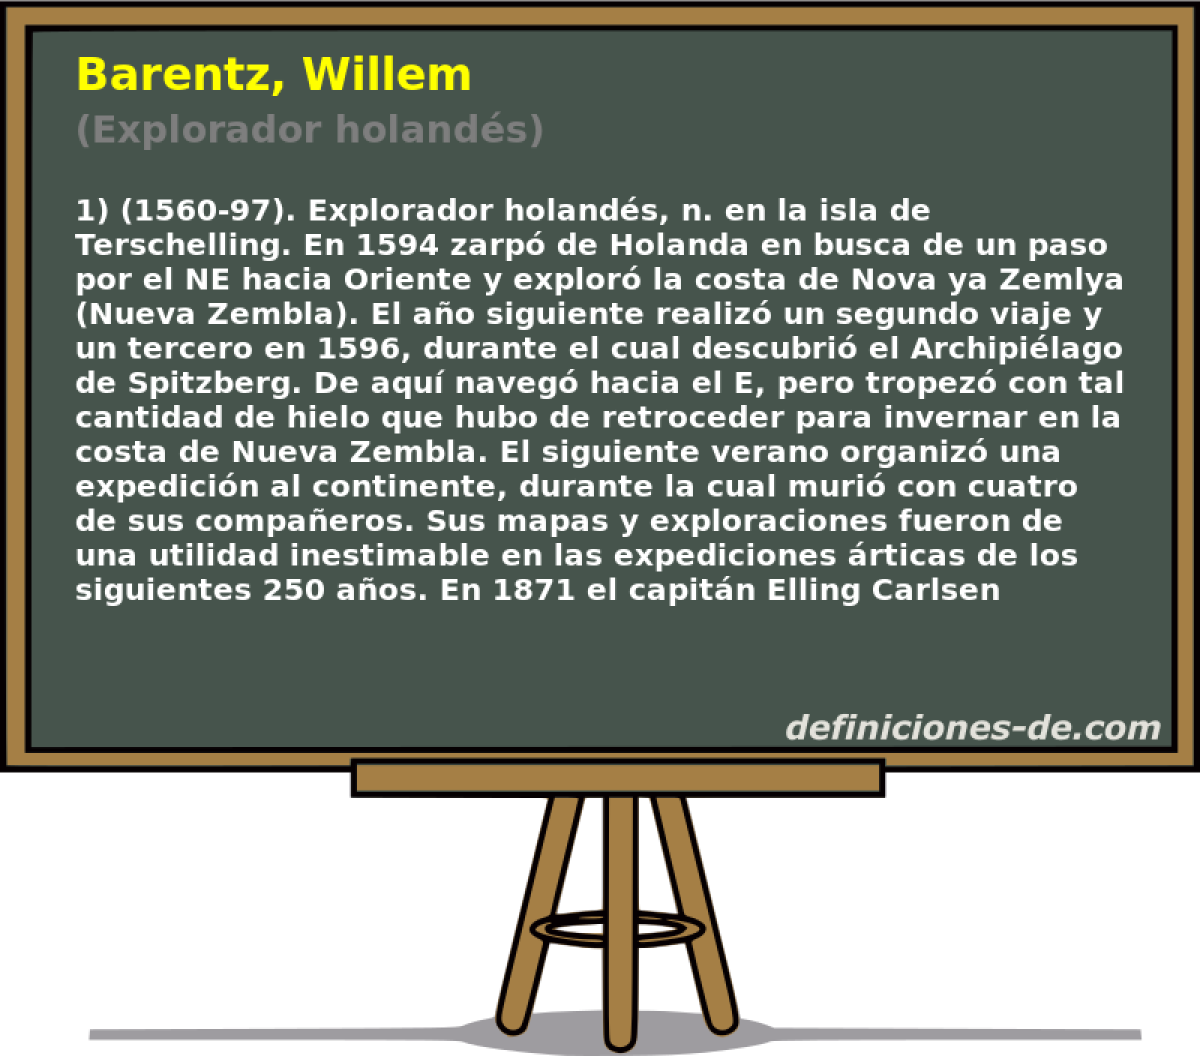 Barentz, Willem (Explorador holands)